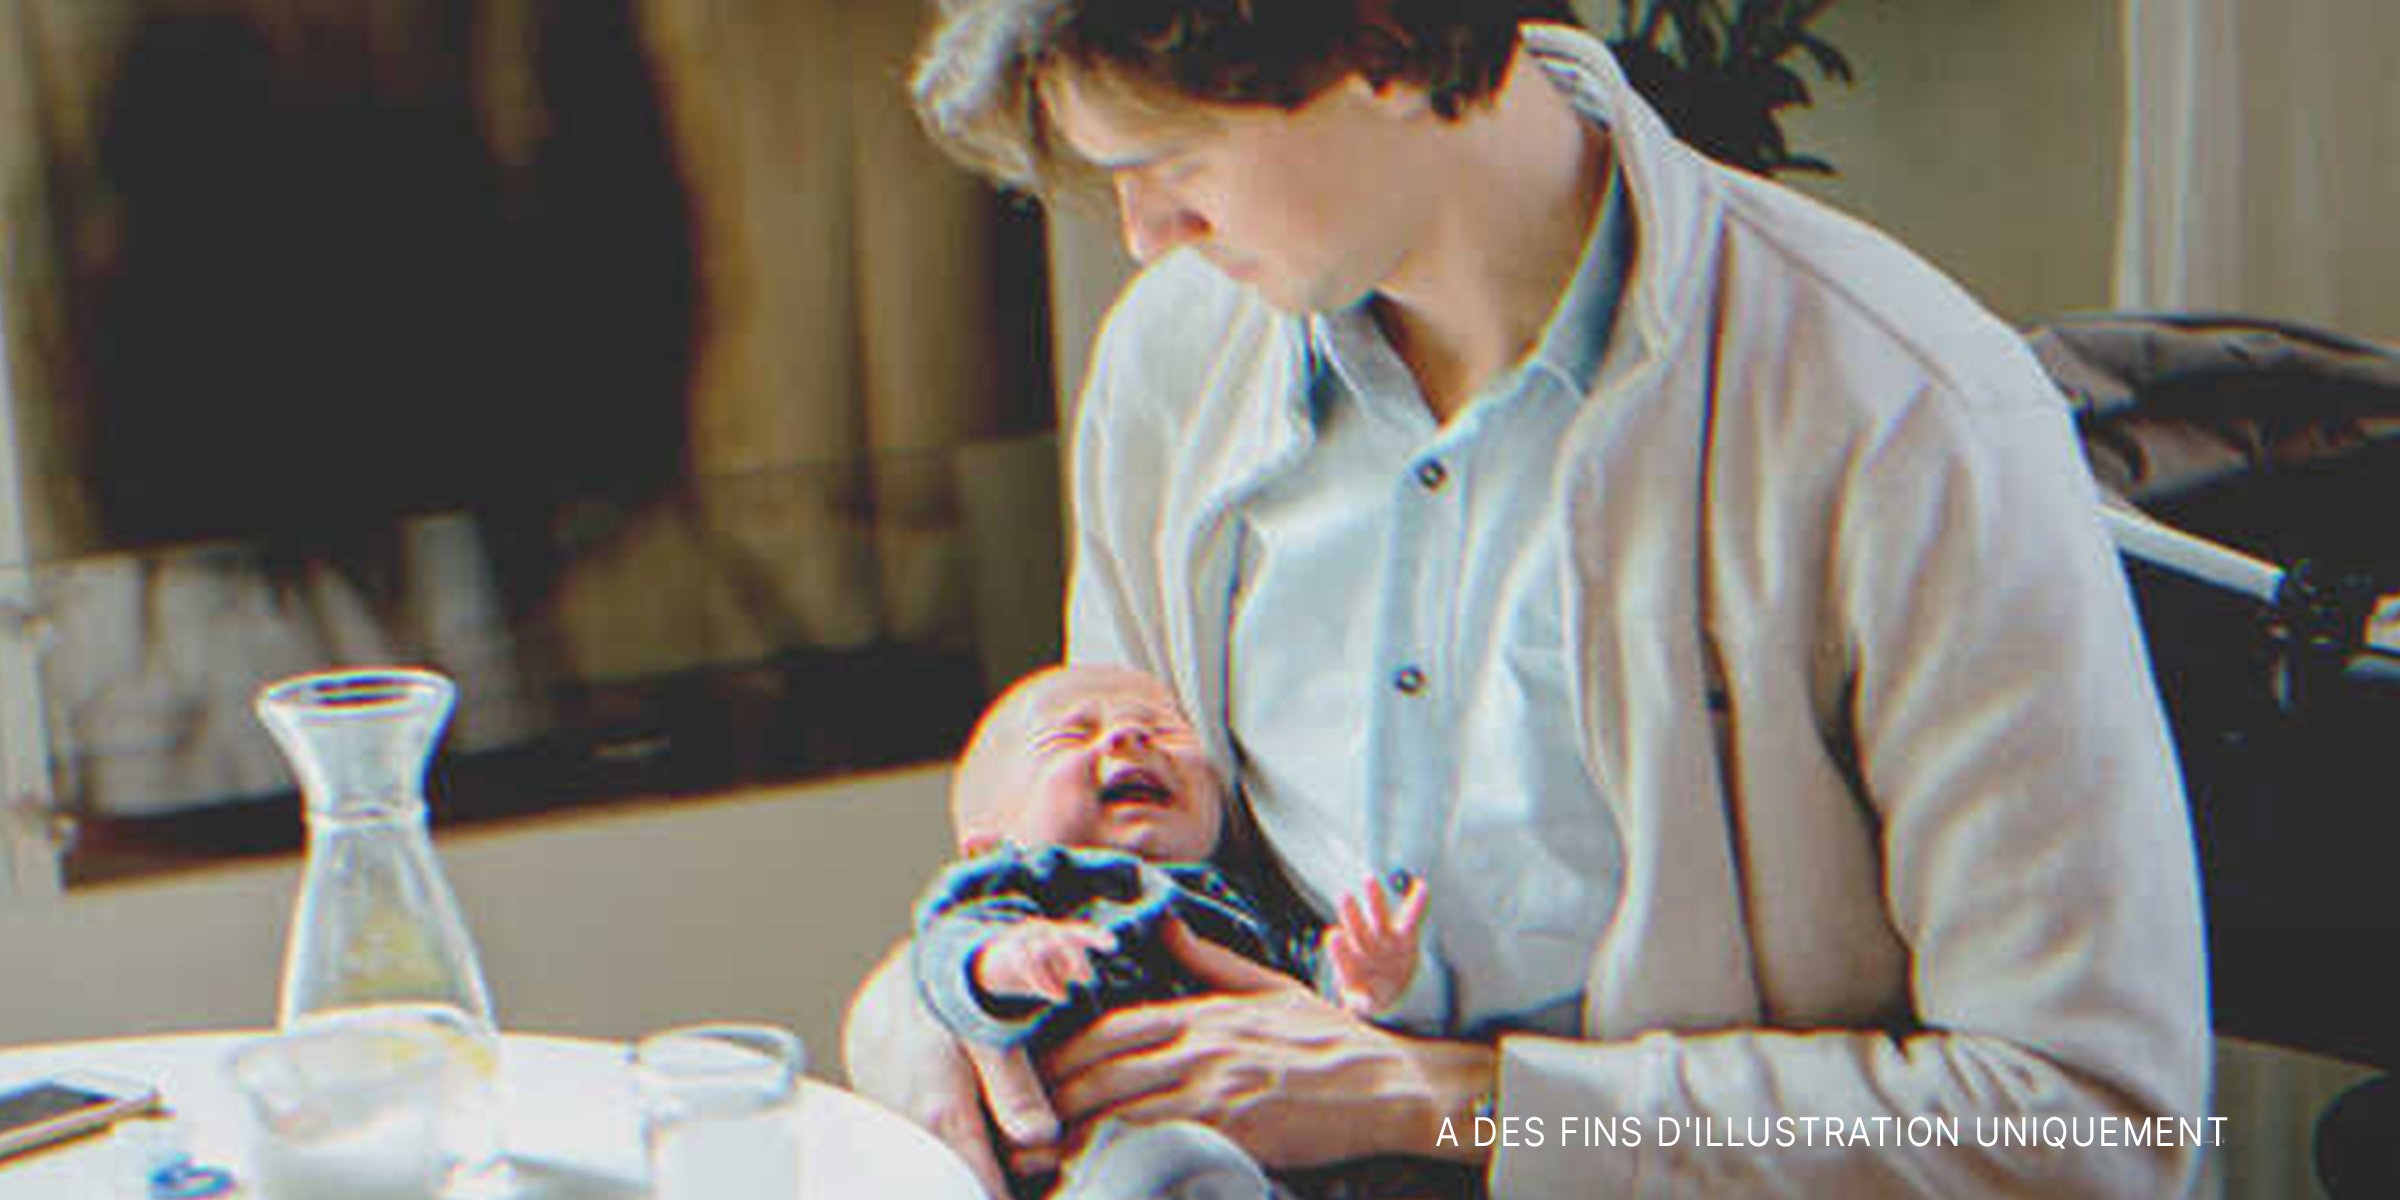 Homme avec bébé qui pleure dans ses bras | Source : Shutterstock